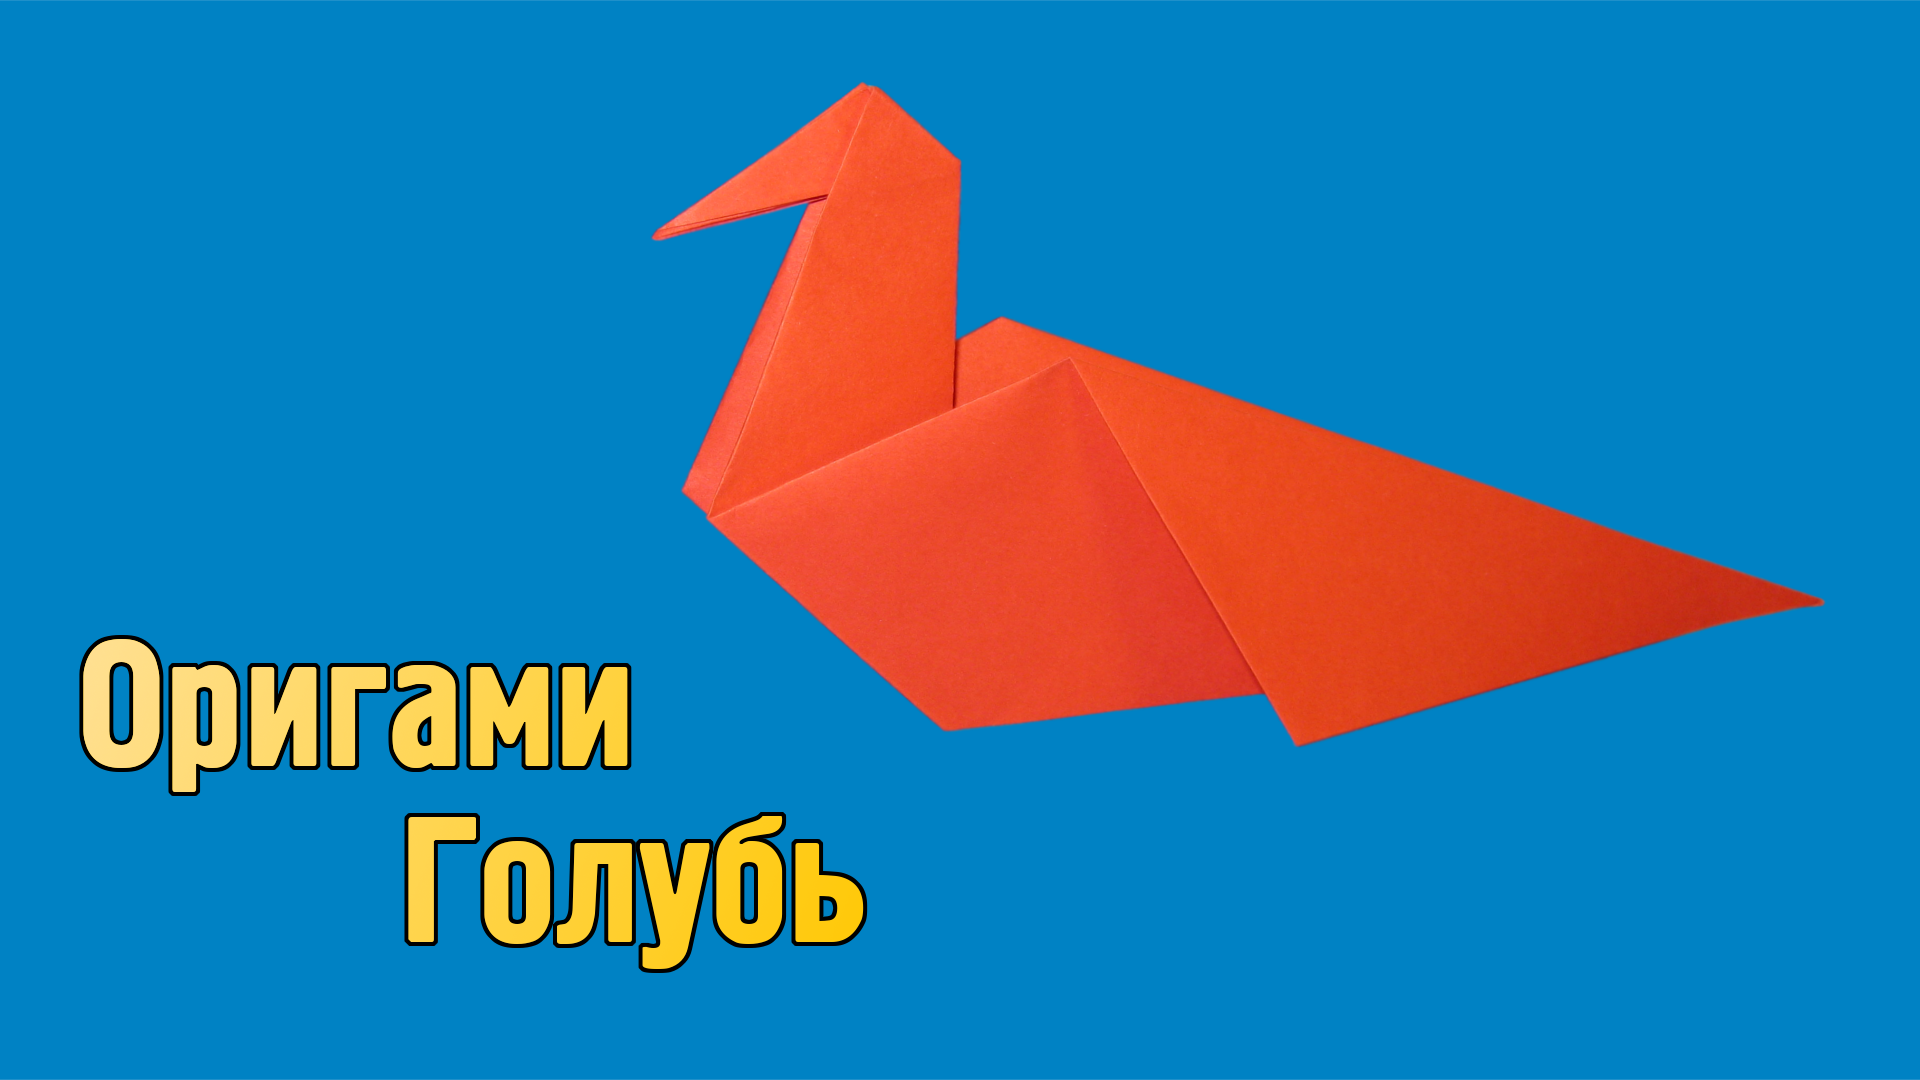 Как сделать Голубя из бумаги своими руками | Простой оригами Голубь для детей | Фигурка Птицы